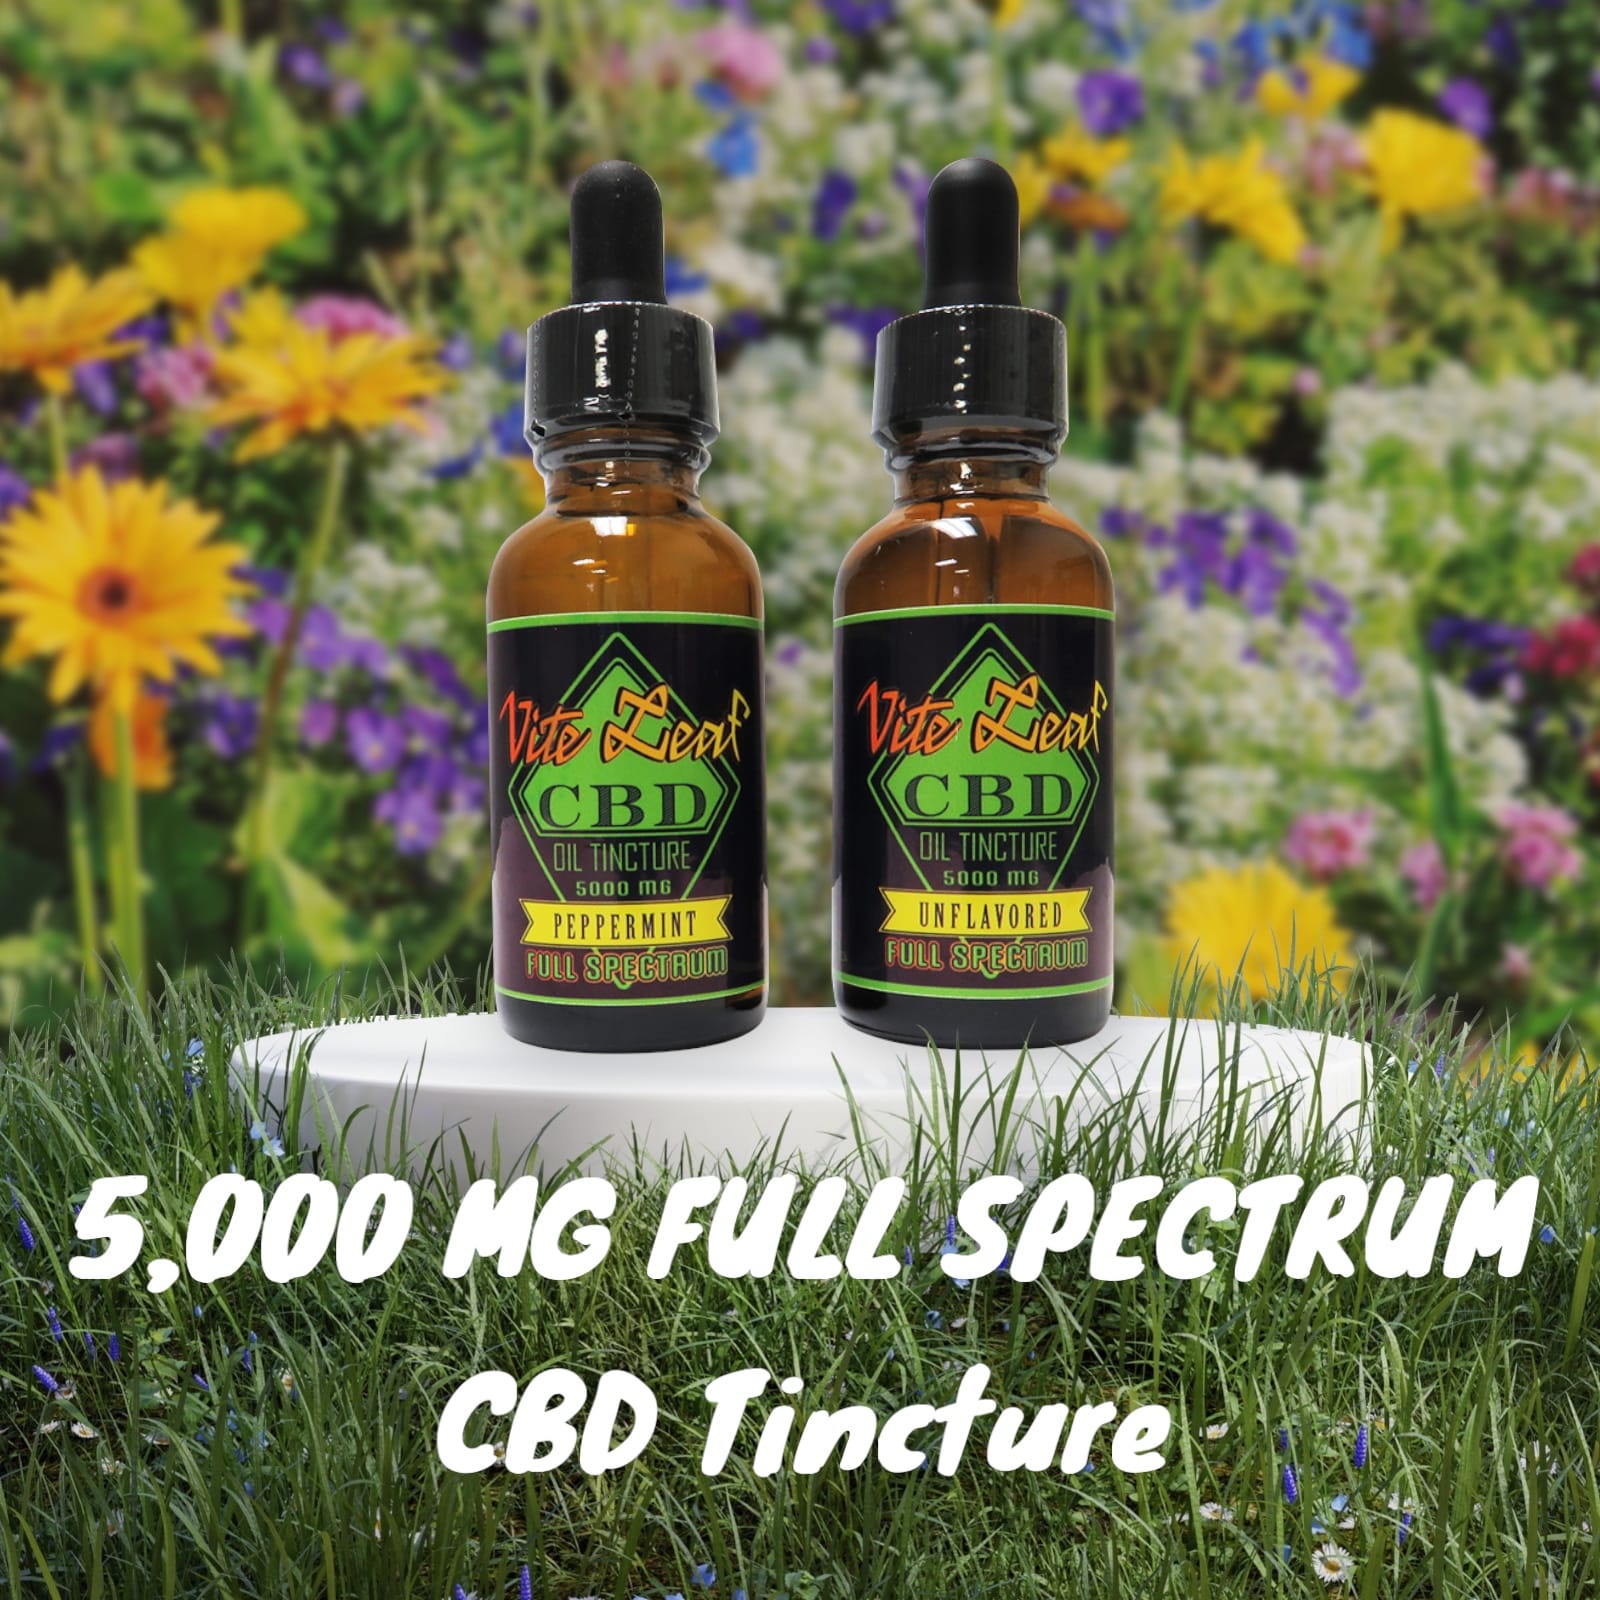 5,000 mg full spectrum oil tincture CBD